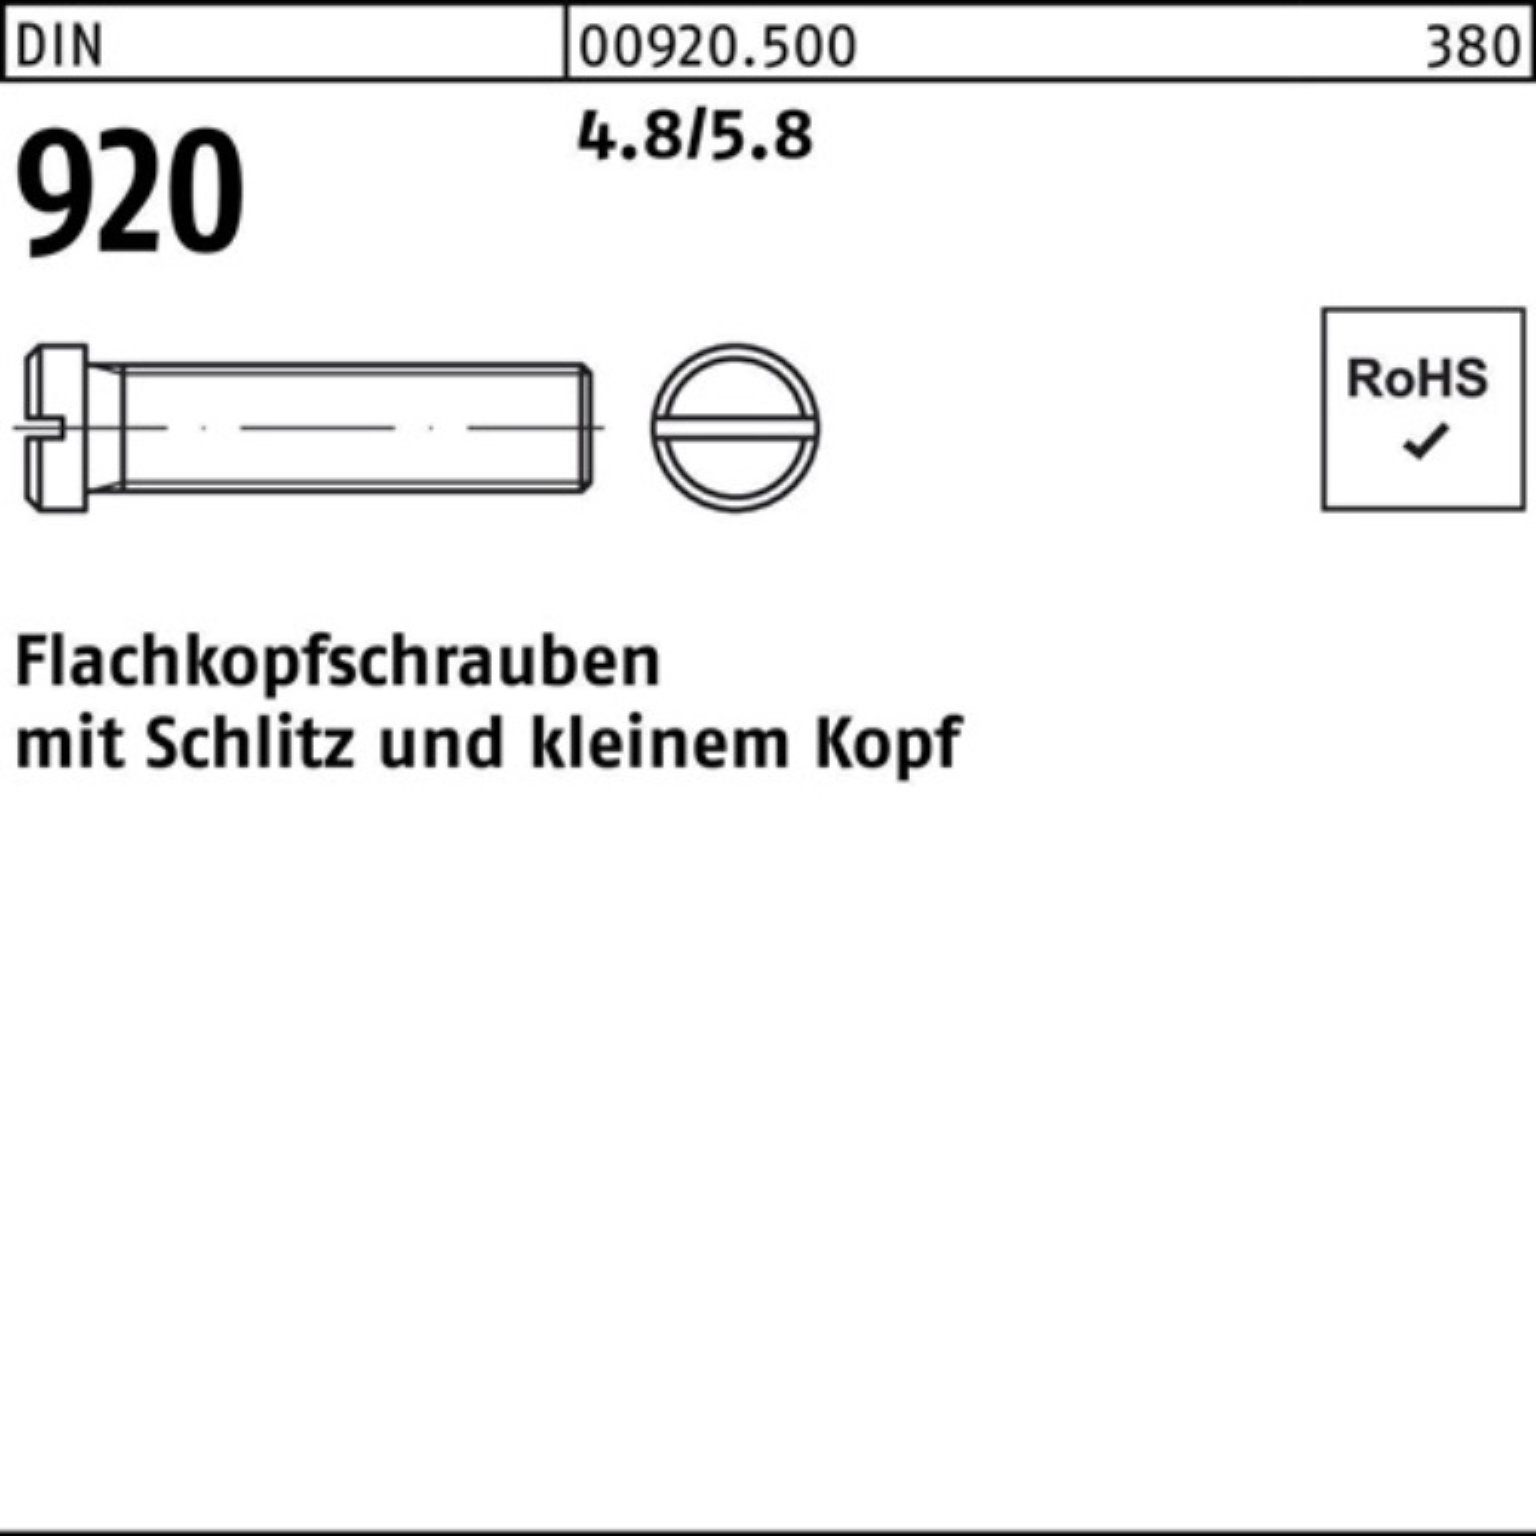 M3x 920 100er 3 Stück Reyher DIN 100 Schlitz 4.8/5.8 Pack Flachkopfschraube Schraube